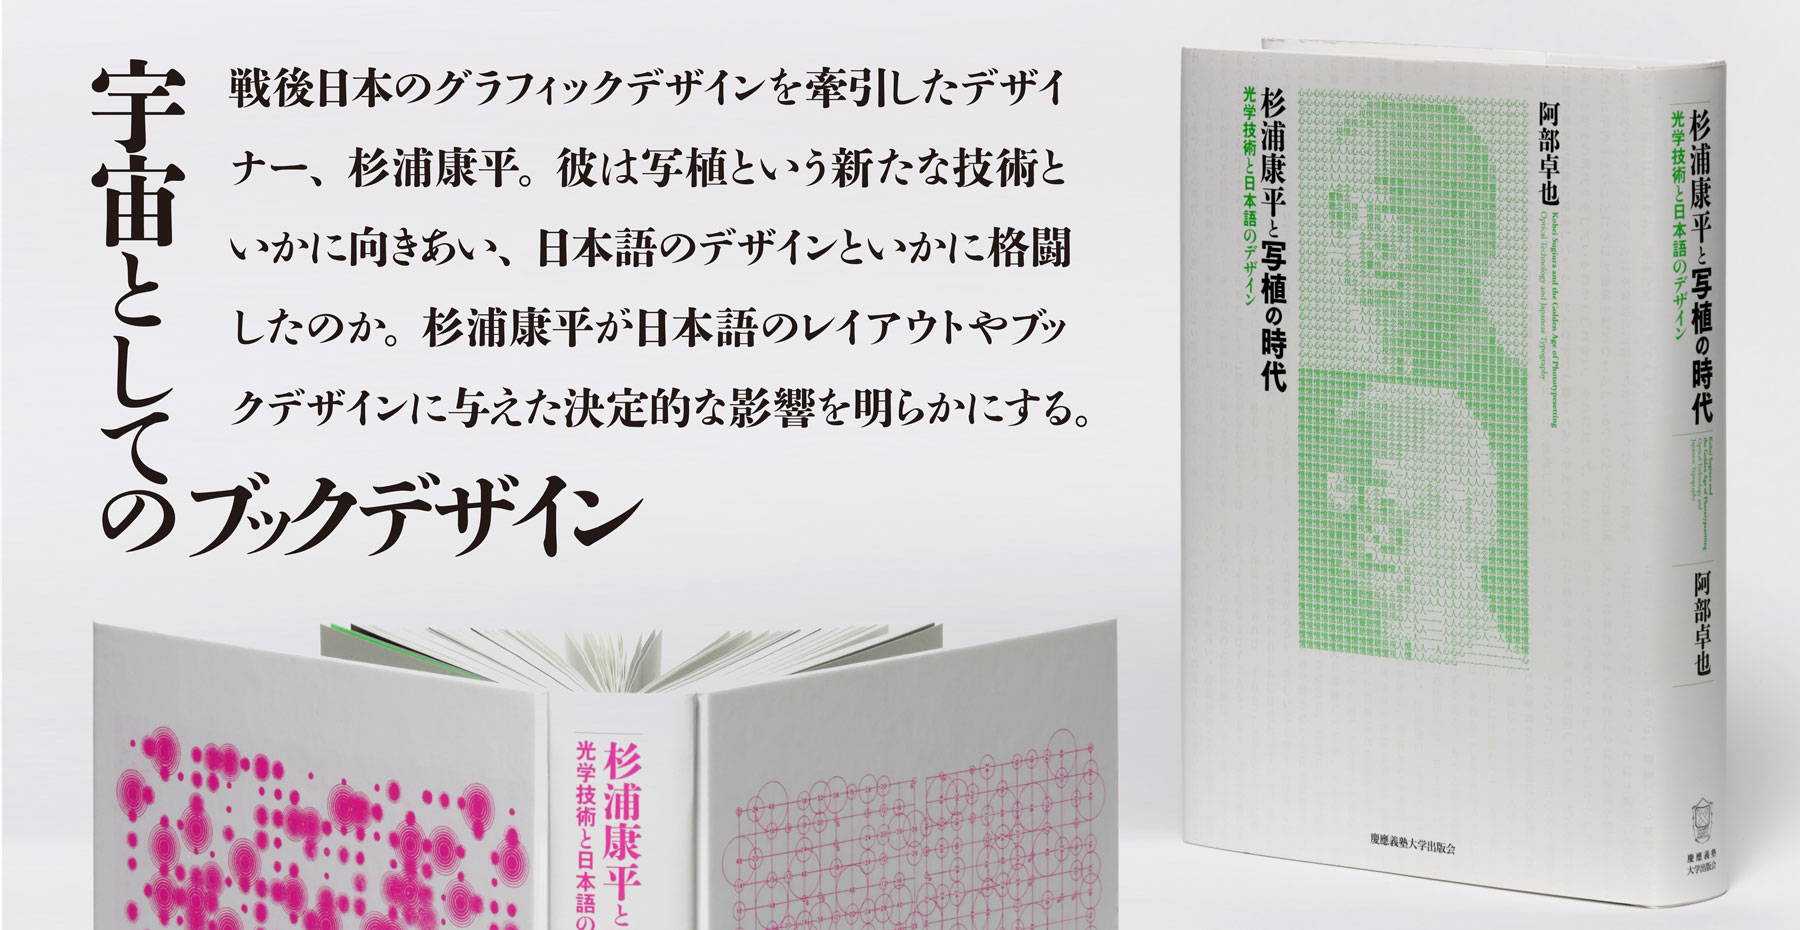 『杉浦康平と写植の時代－光学技術と日本語のデザイン』（阿部 卓也 著）